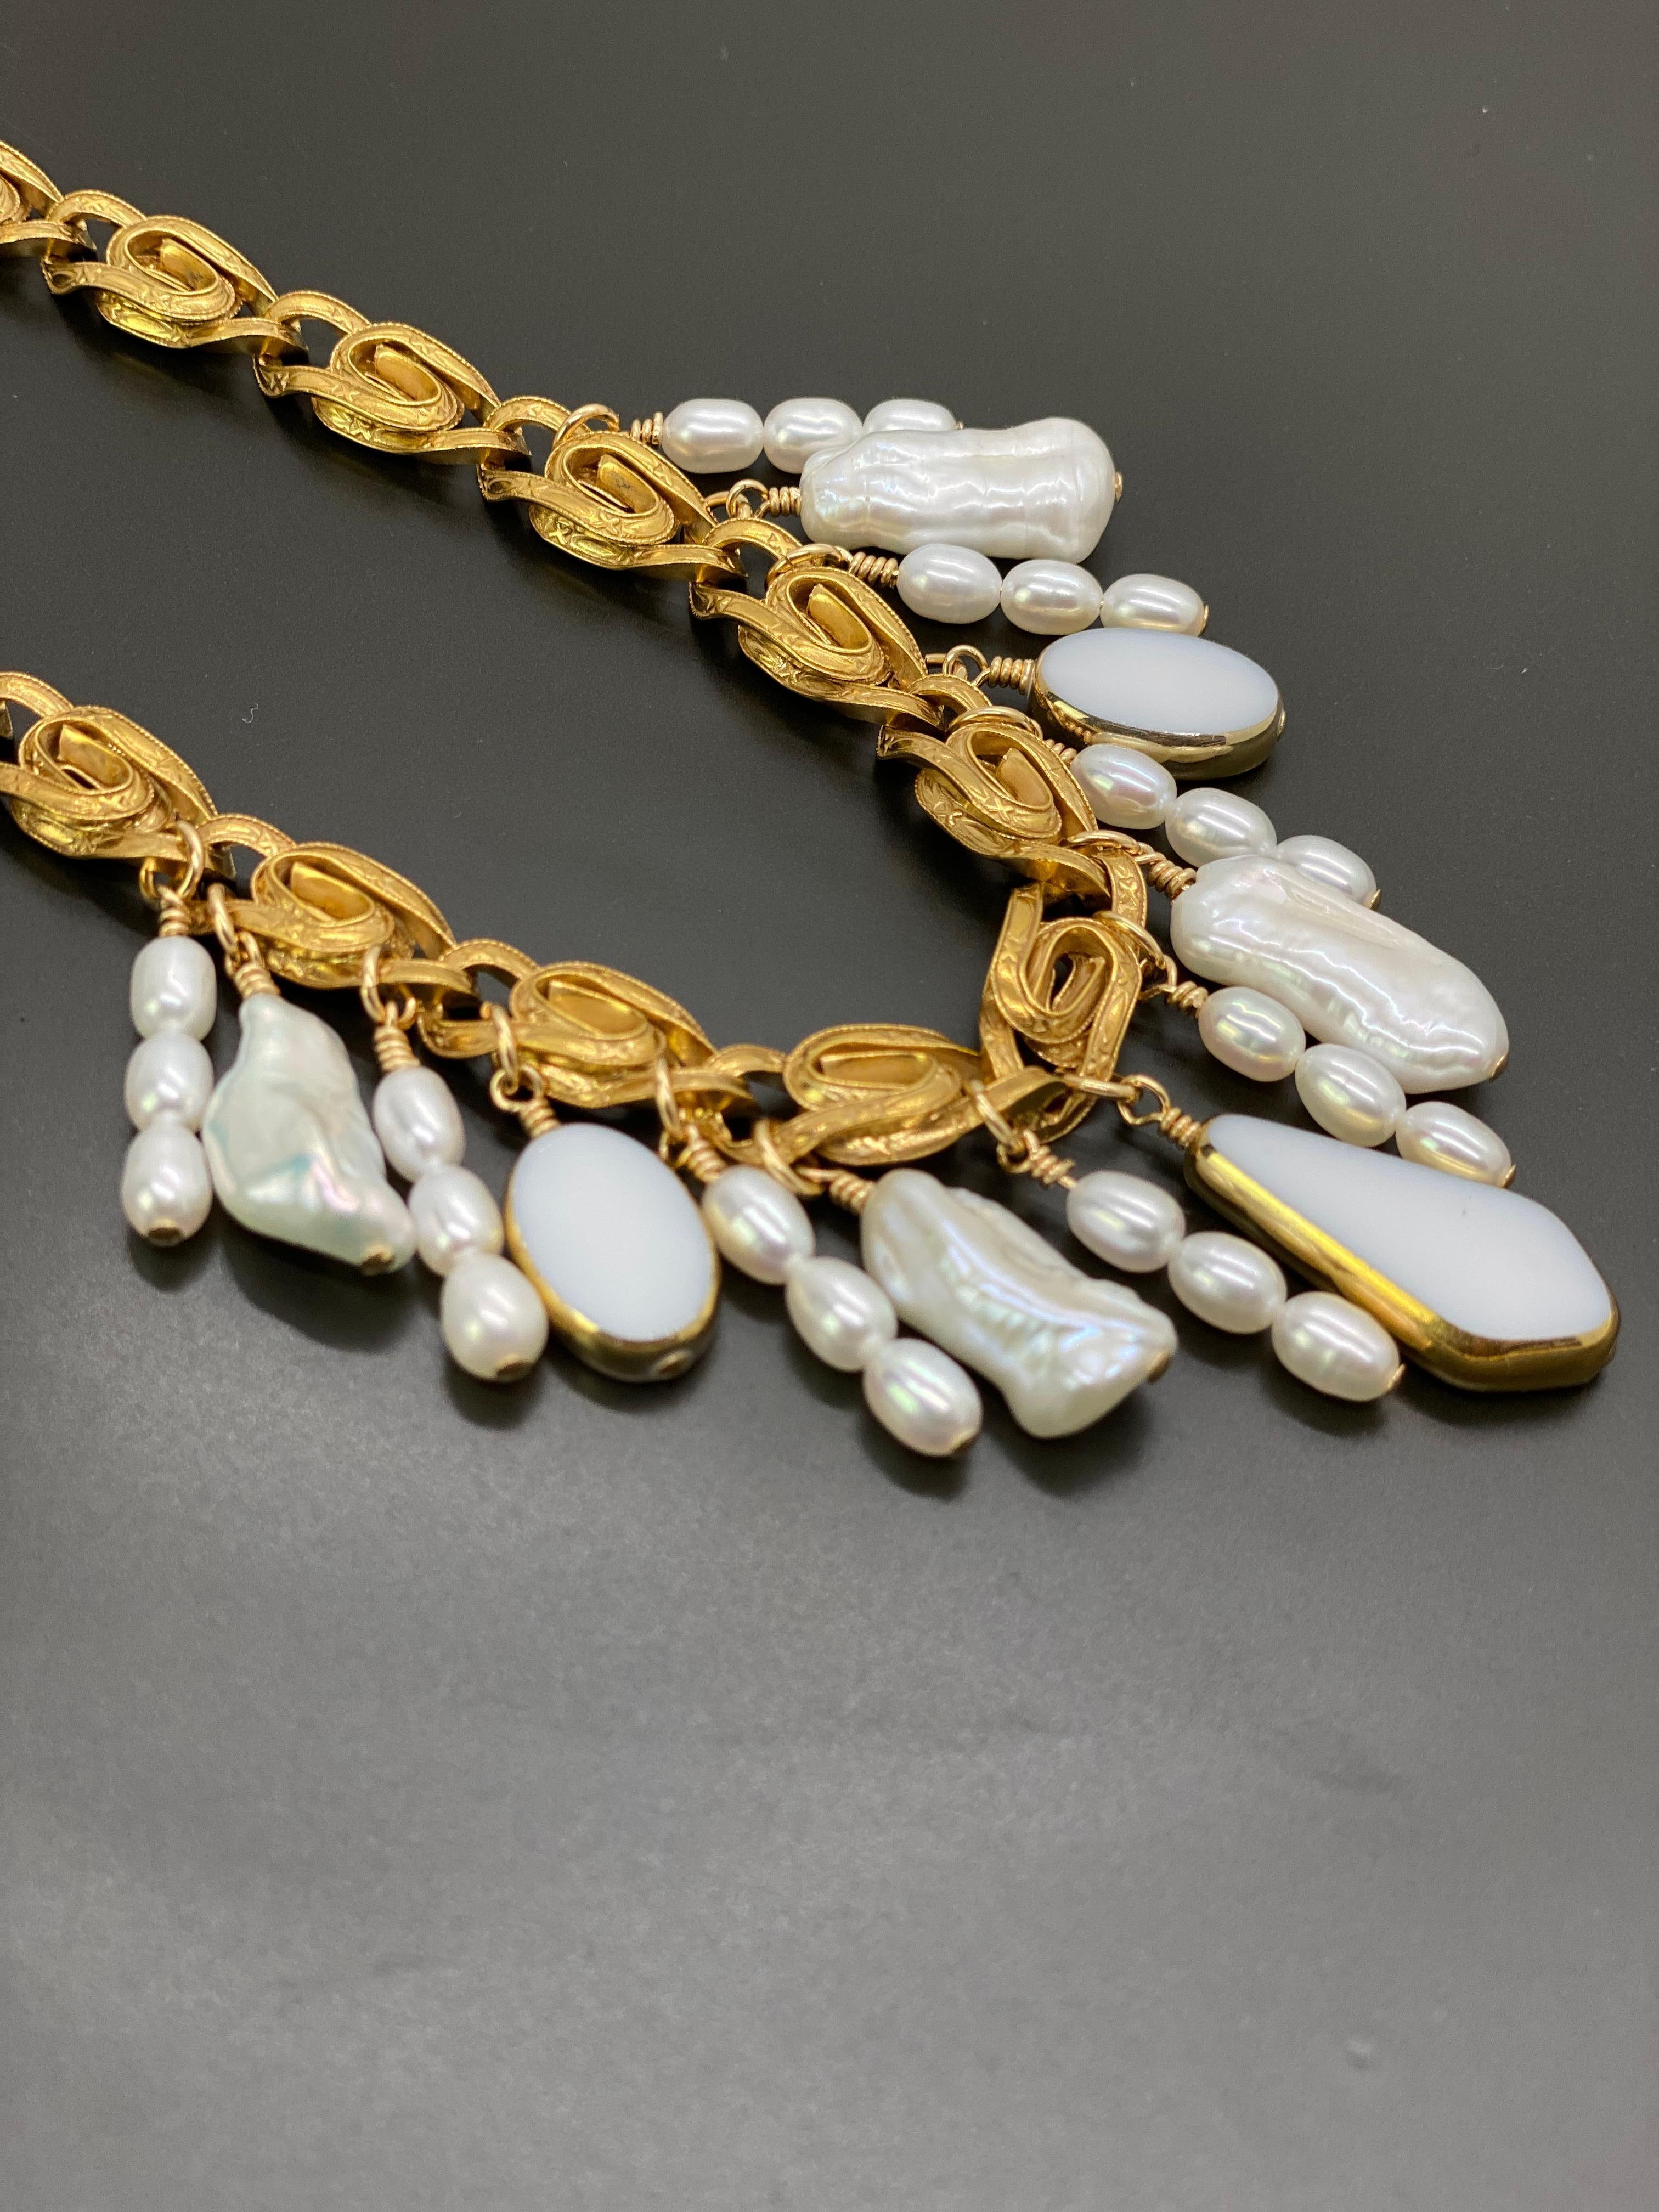 Inspirée du Glam des années 1920, la chaîne antique est ornée de magnifiques filigranes. La chaîne est ornée de 3 perles de verre allemandes vintage qui sont bordées d'or 24K et de perles ovales et d'eau douce. Le collier se termine par un fermoir